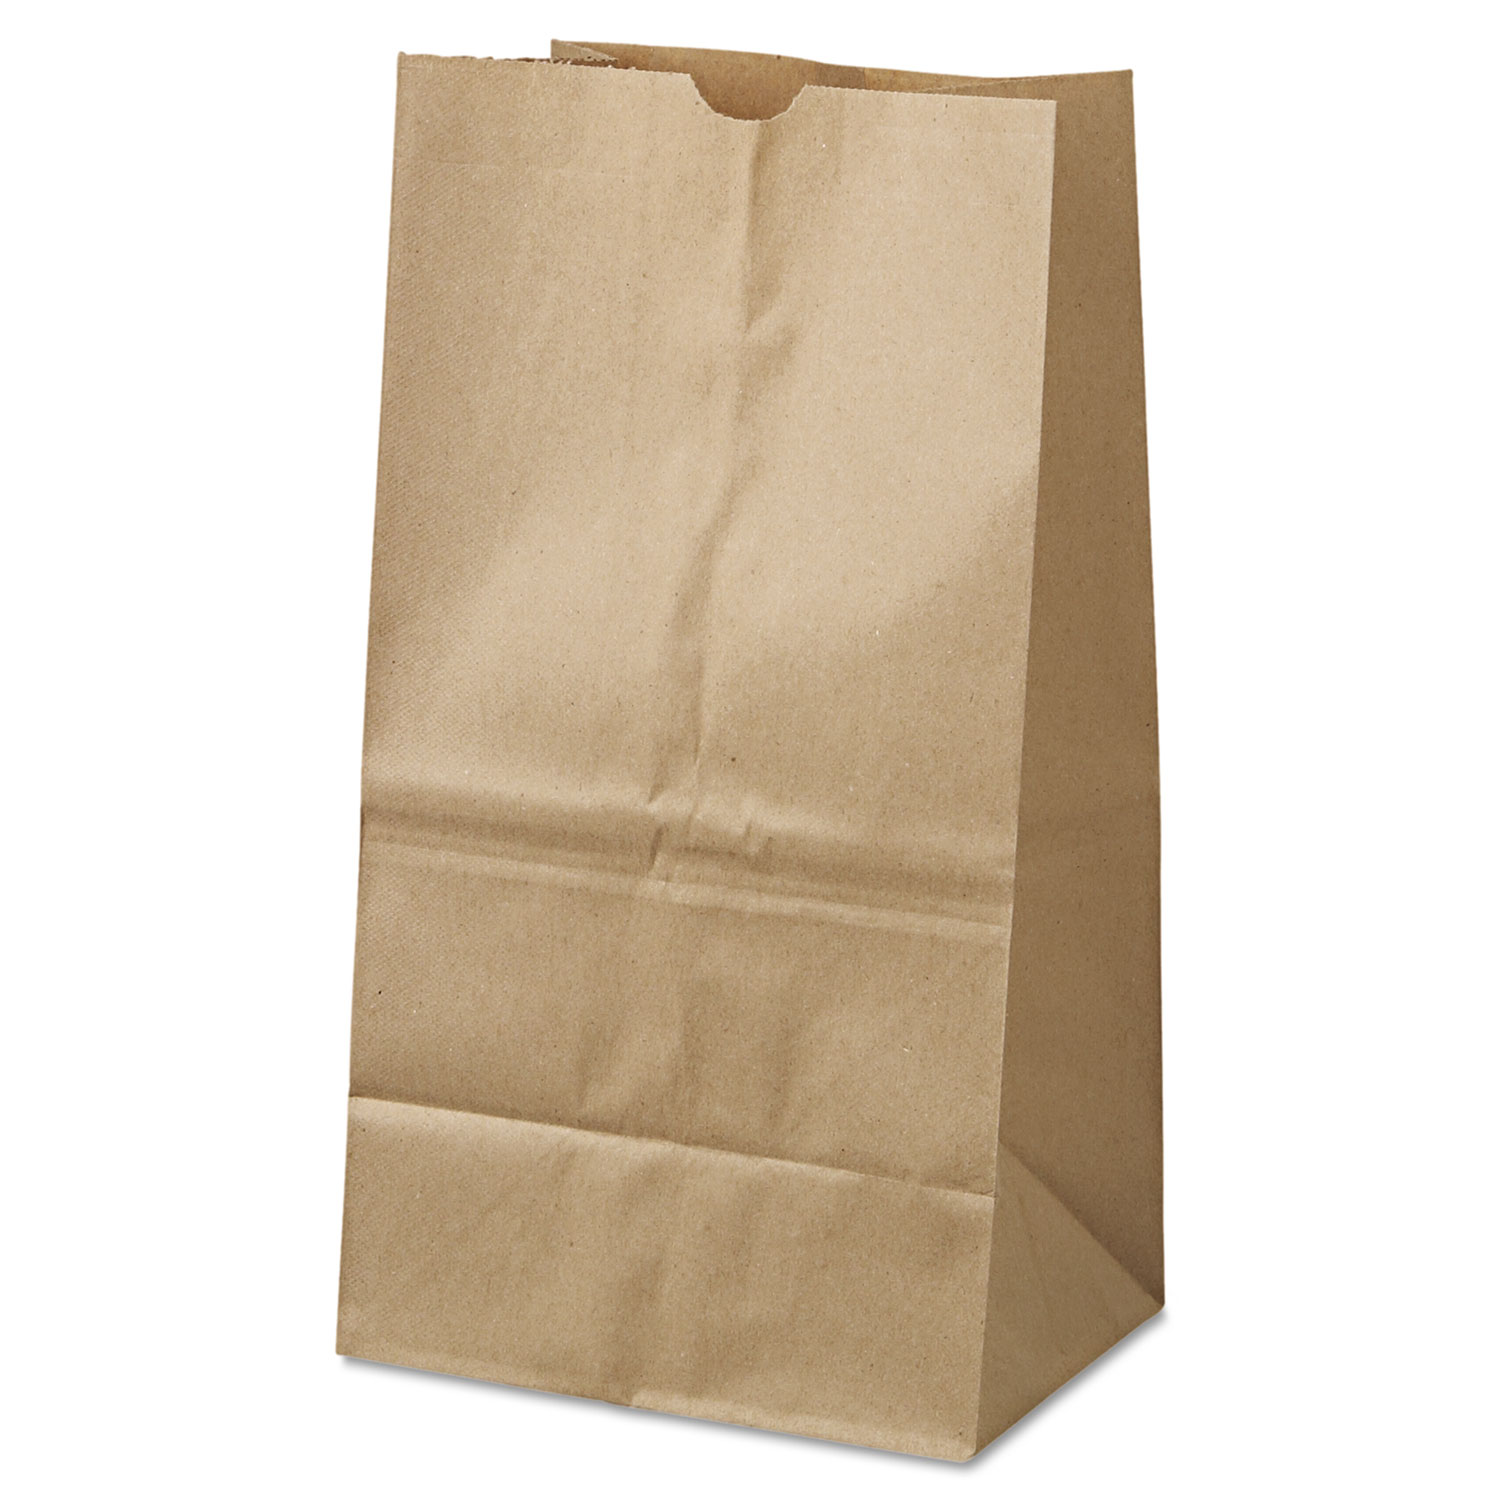  General 18428 Grocery Paper Bags, 40 lbs Capacity, #25 Squat, 8.25w x 6.13d x 15.88h, Kraft, 500 Bags (BAGGK25S500) 